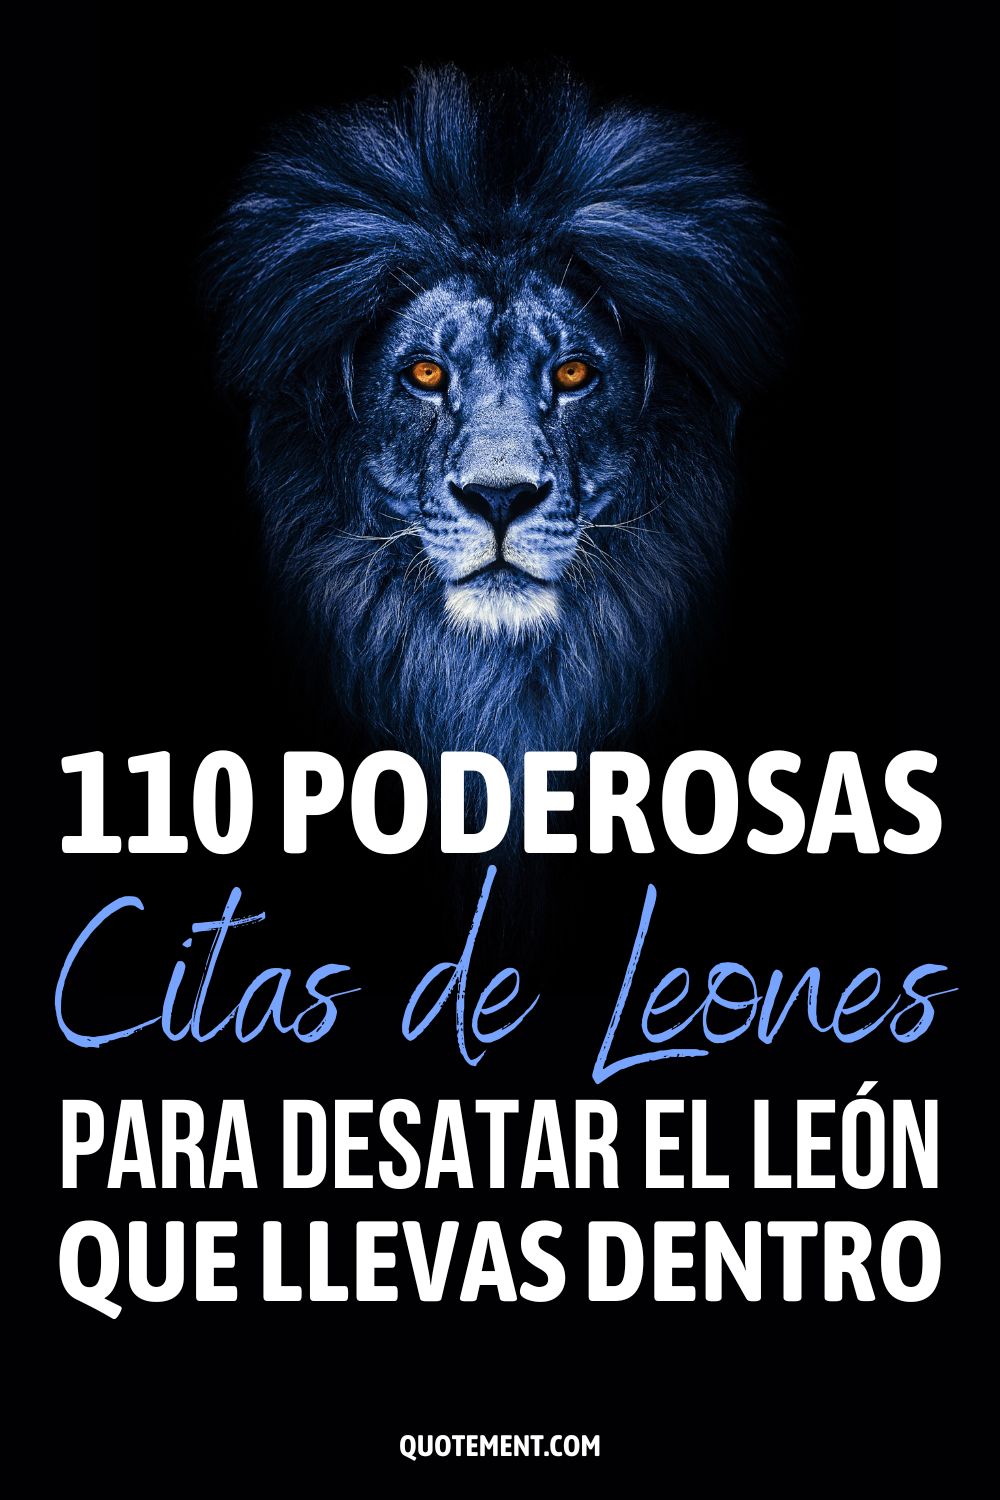 110 poderosas citas de leones para desatar el león que llevas dentro